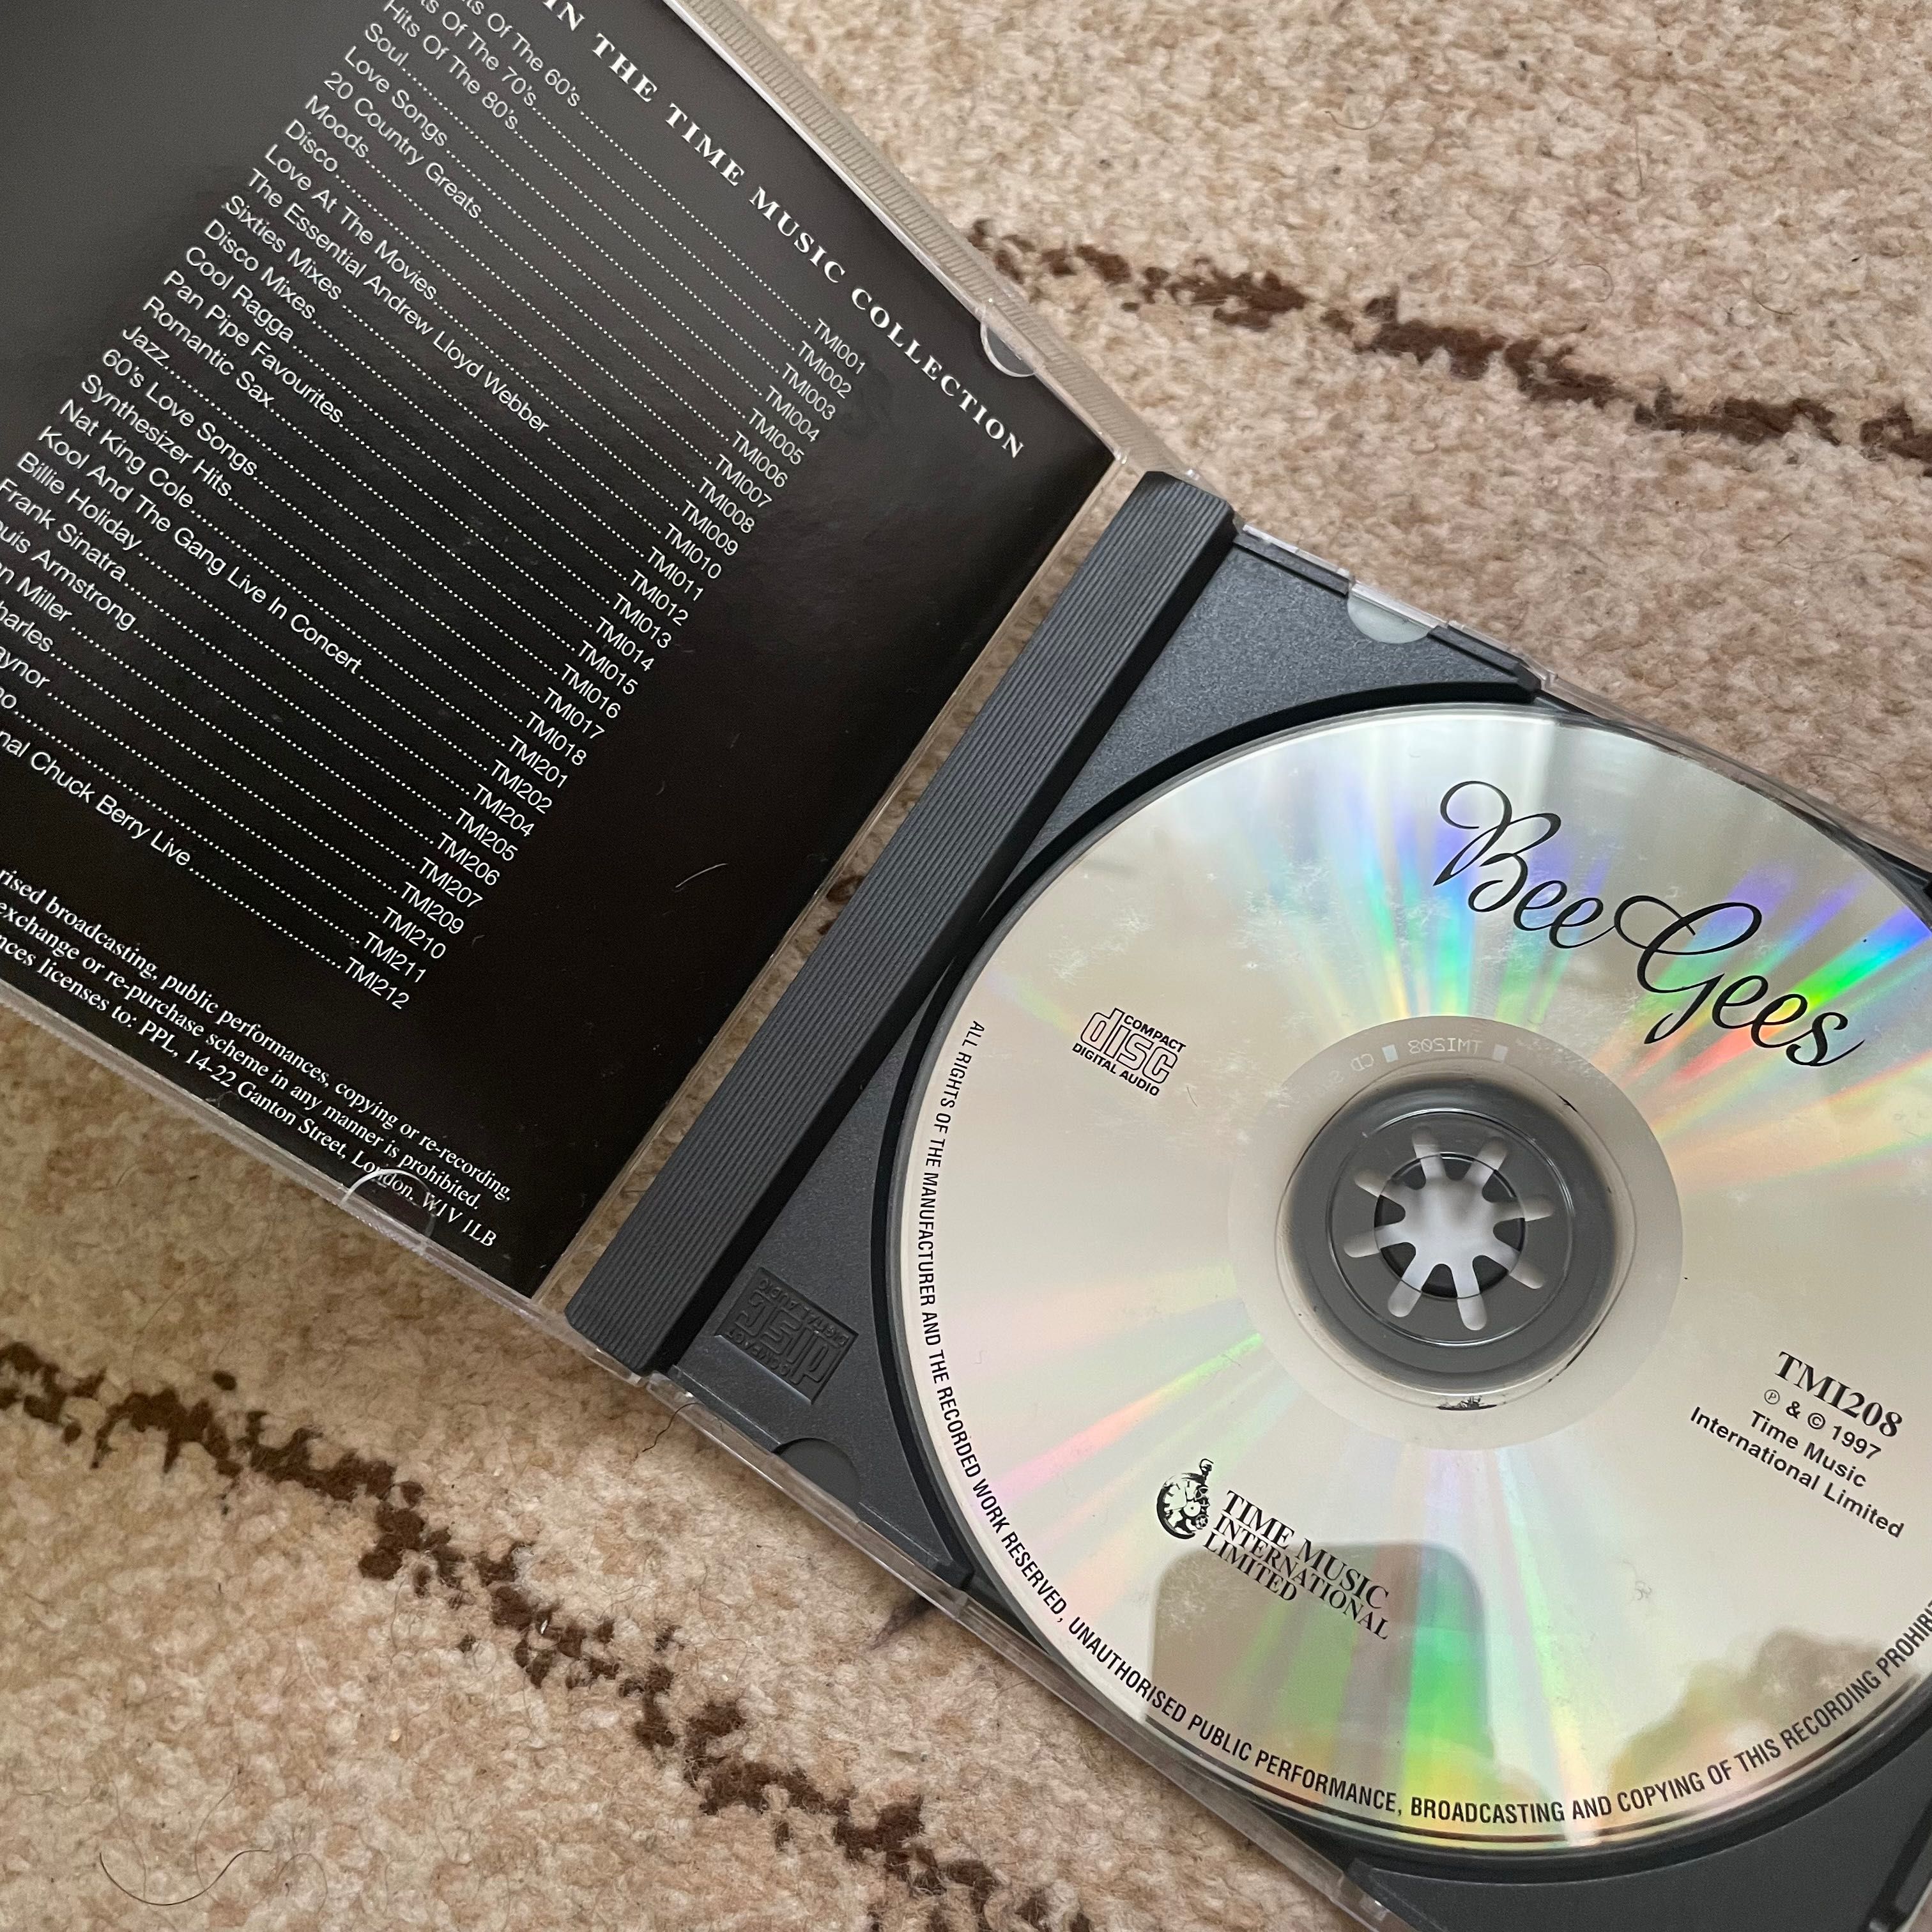 CD - Bee Gees, 1997